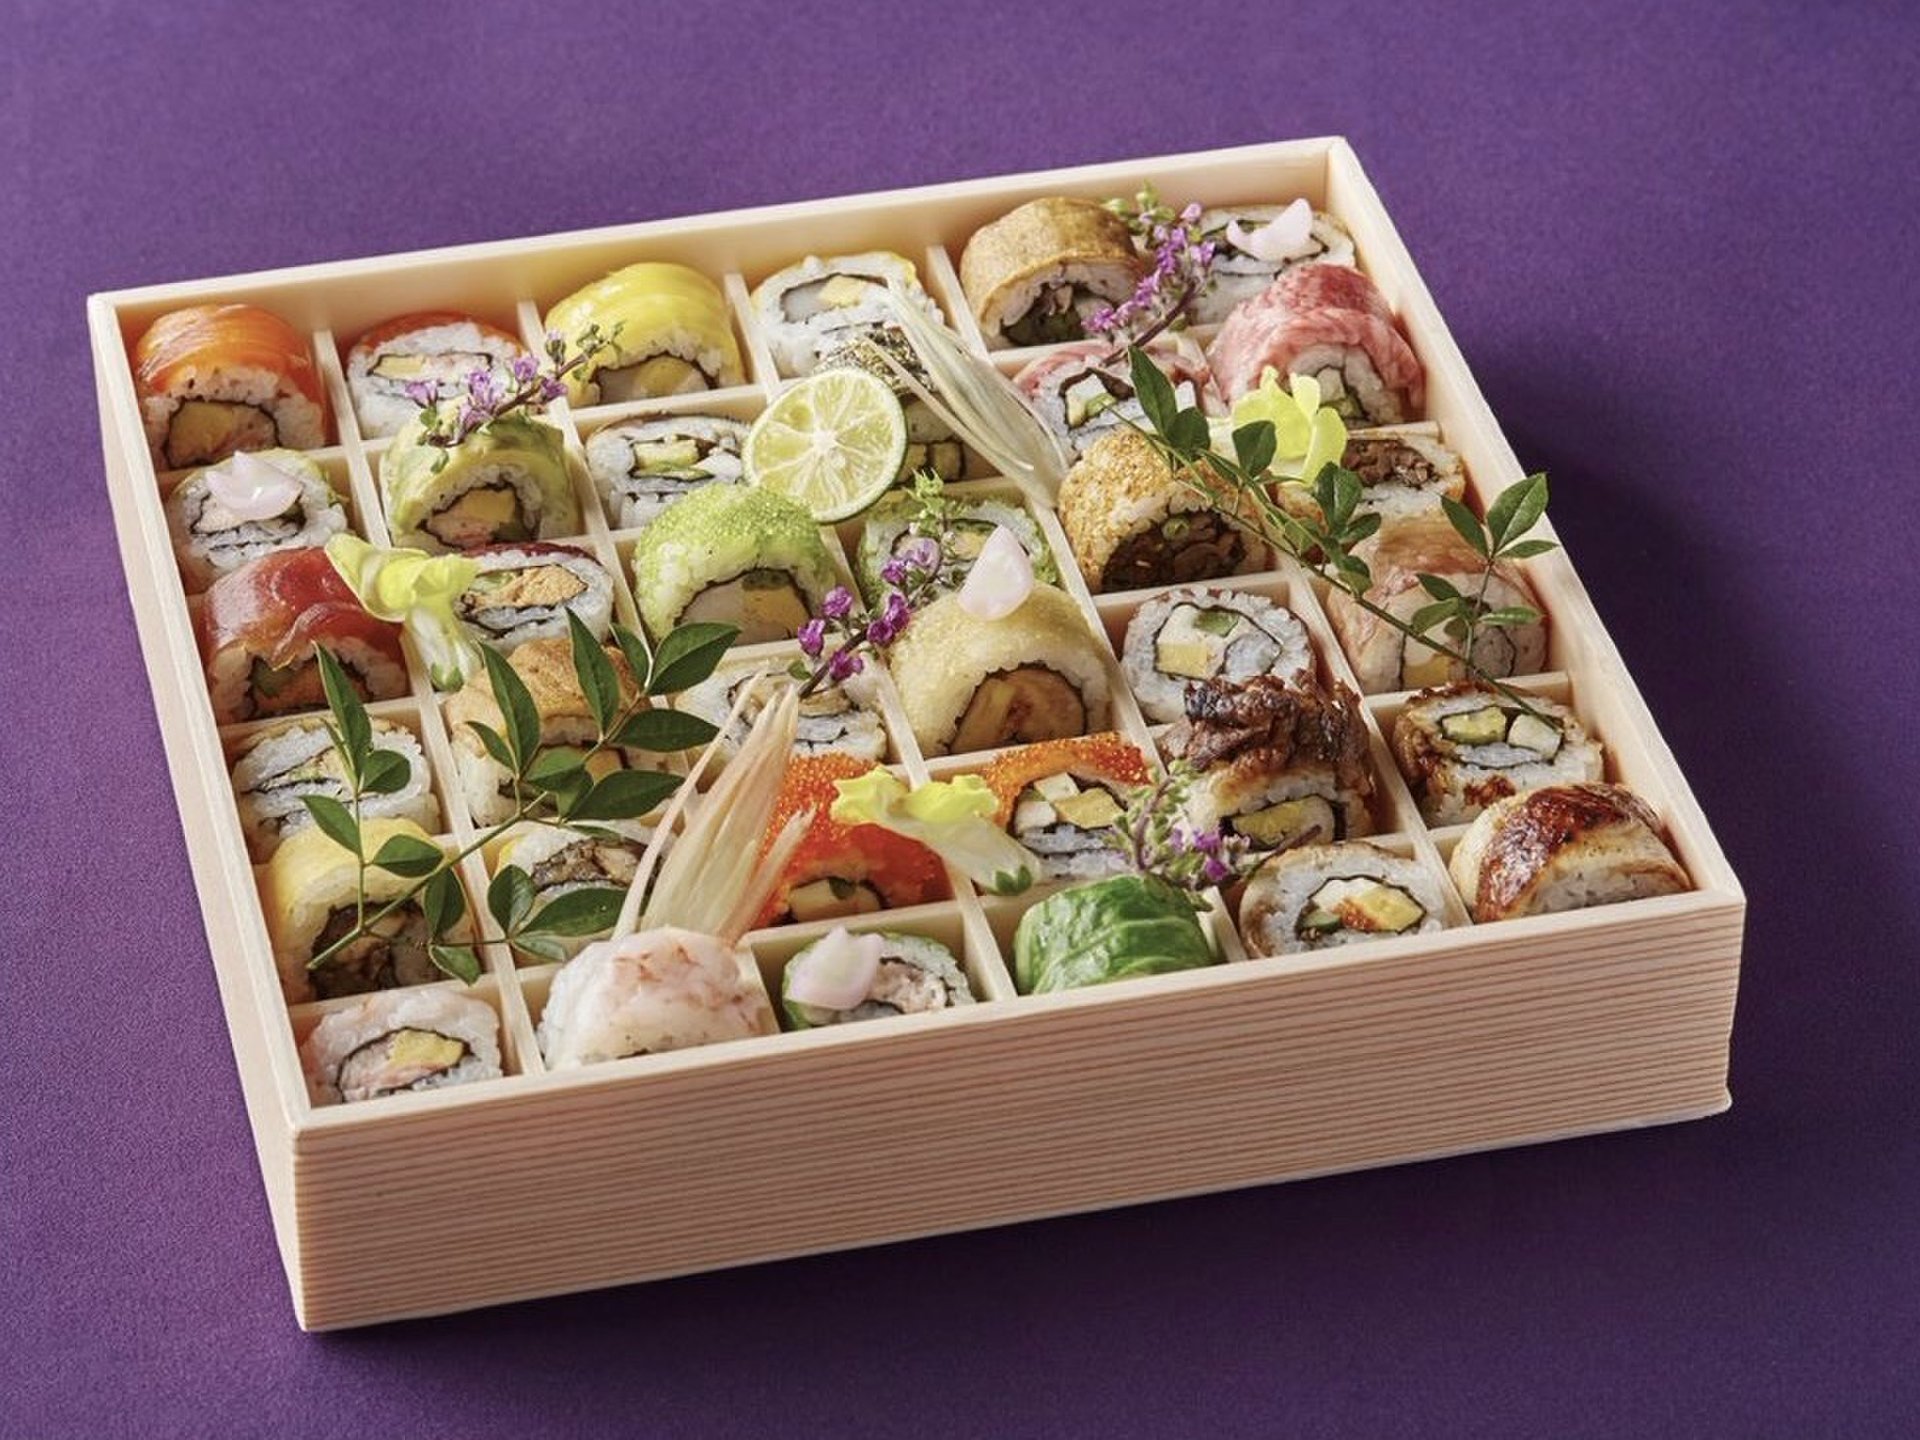 まるで宝石箱♡SHARIの持ち帰りロール寿司でおうちプチ豪華なディナータイムを。